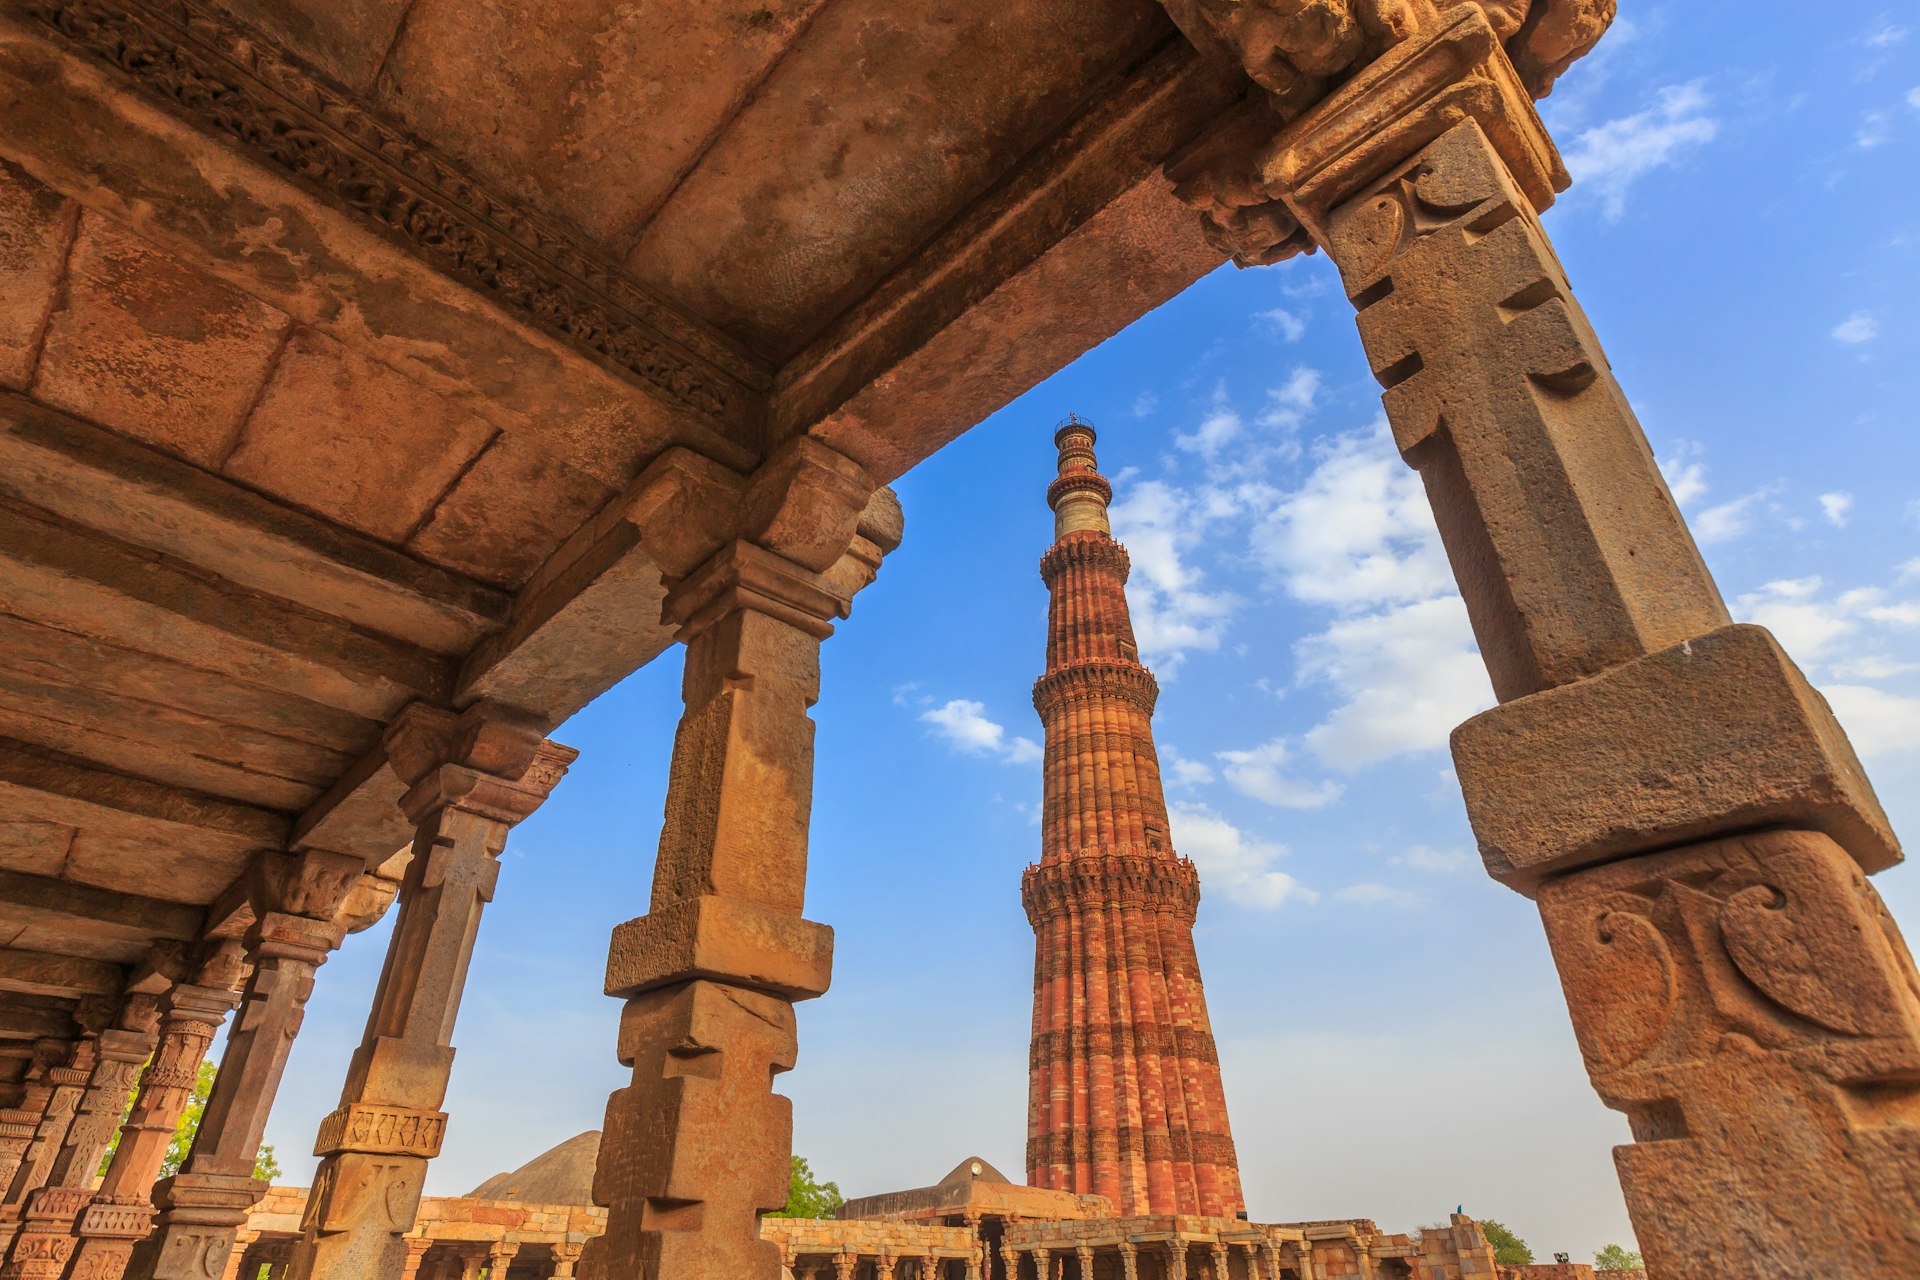 Low-angle view of Qutub Minar, Delhi, India